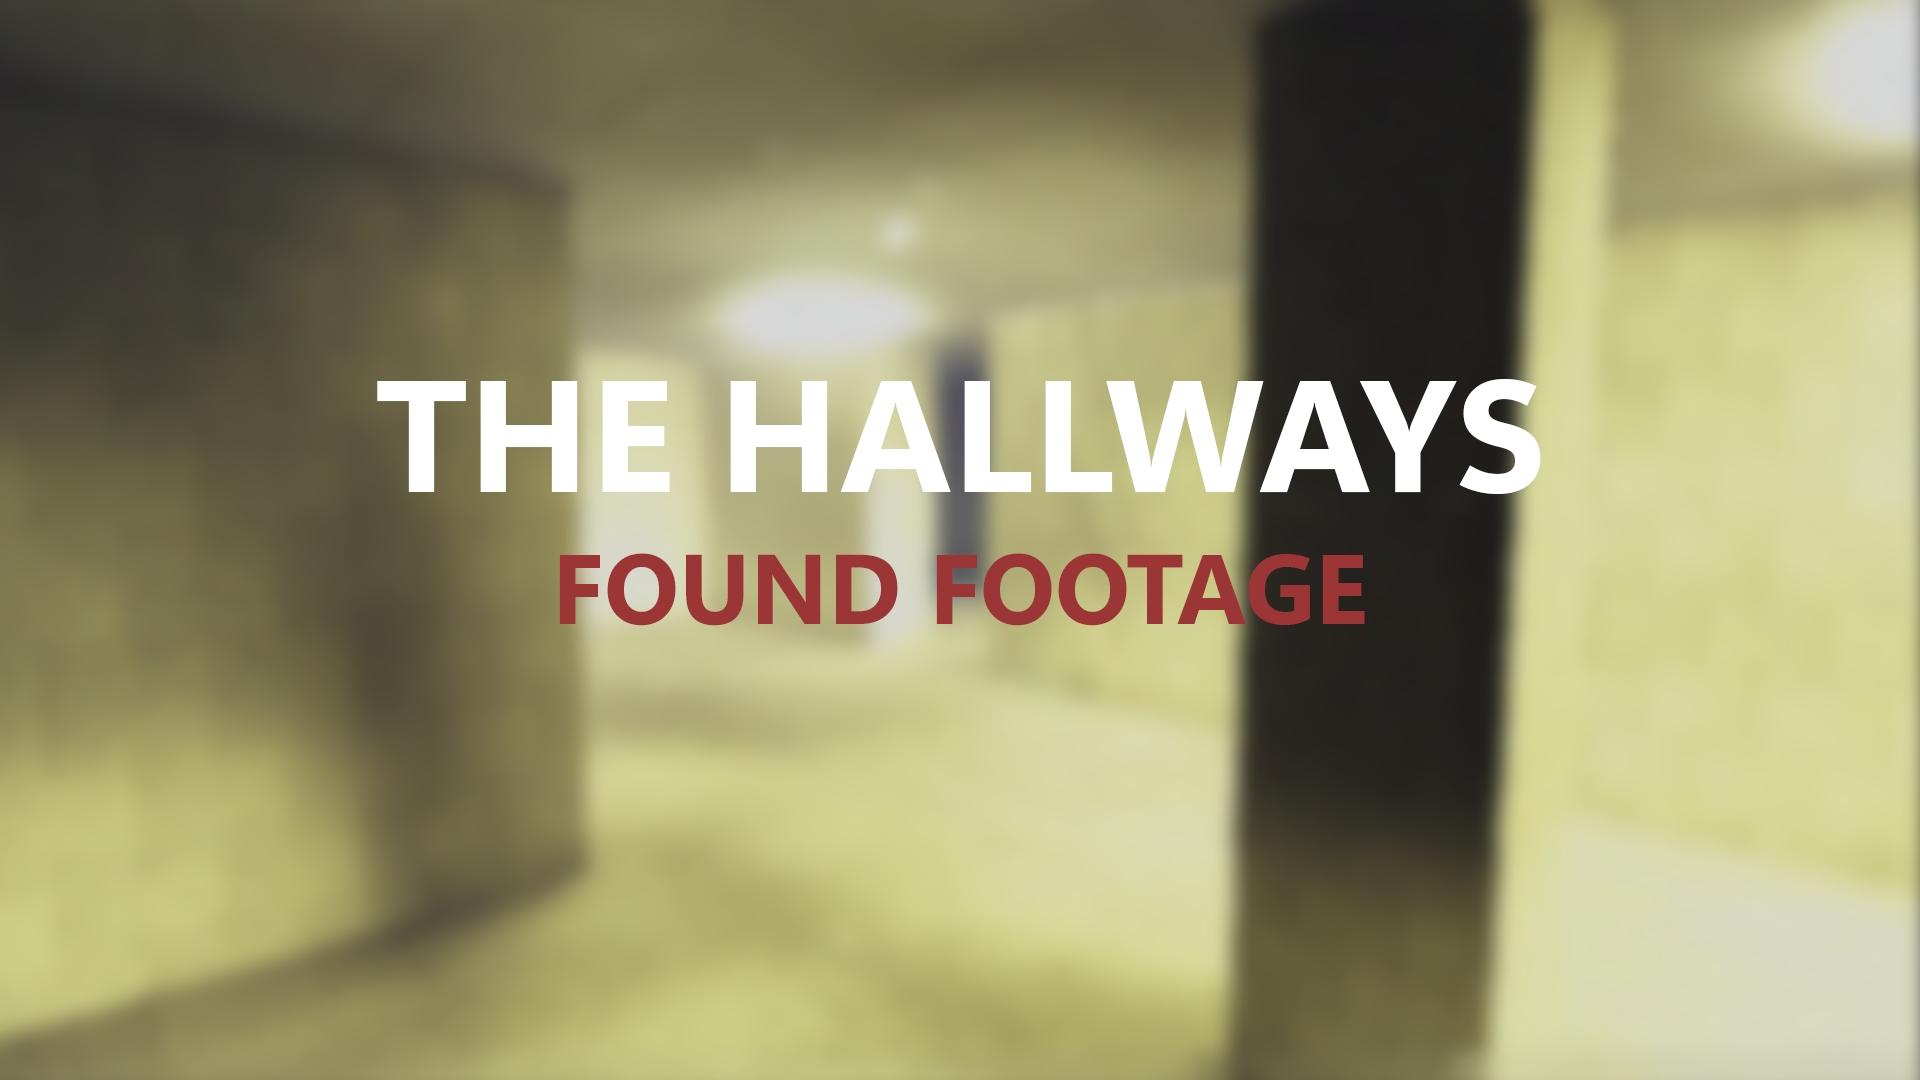 The Hallways Found footage